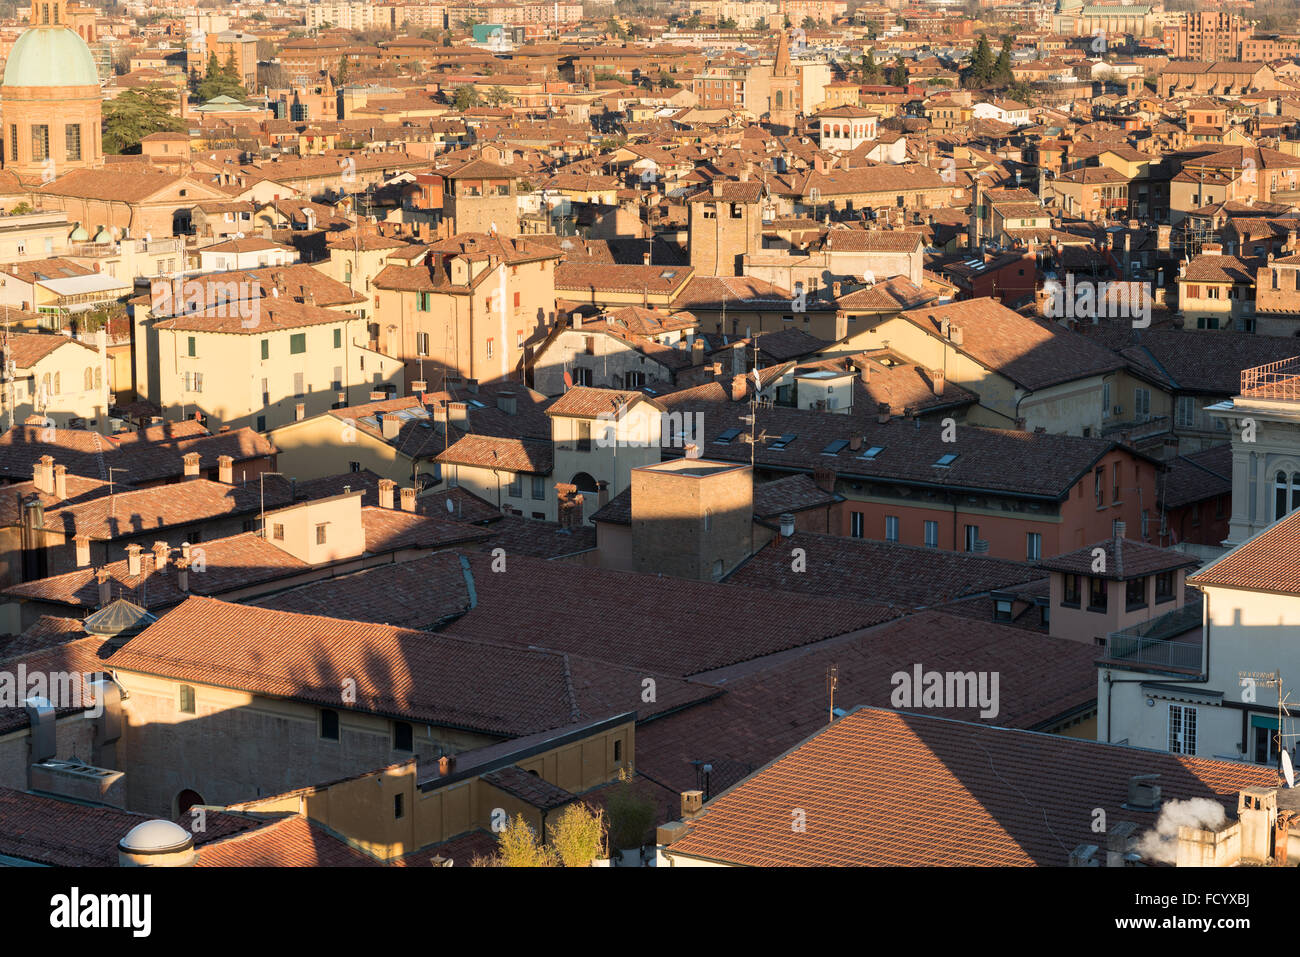 Luftaufnahme von Bologna, Italien. Draufsicht. Stockfoto